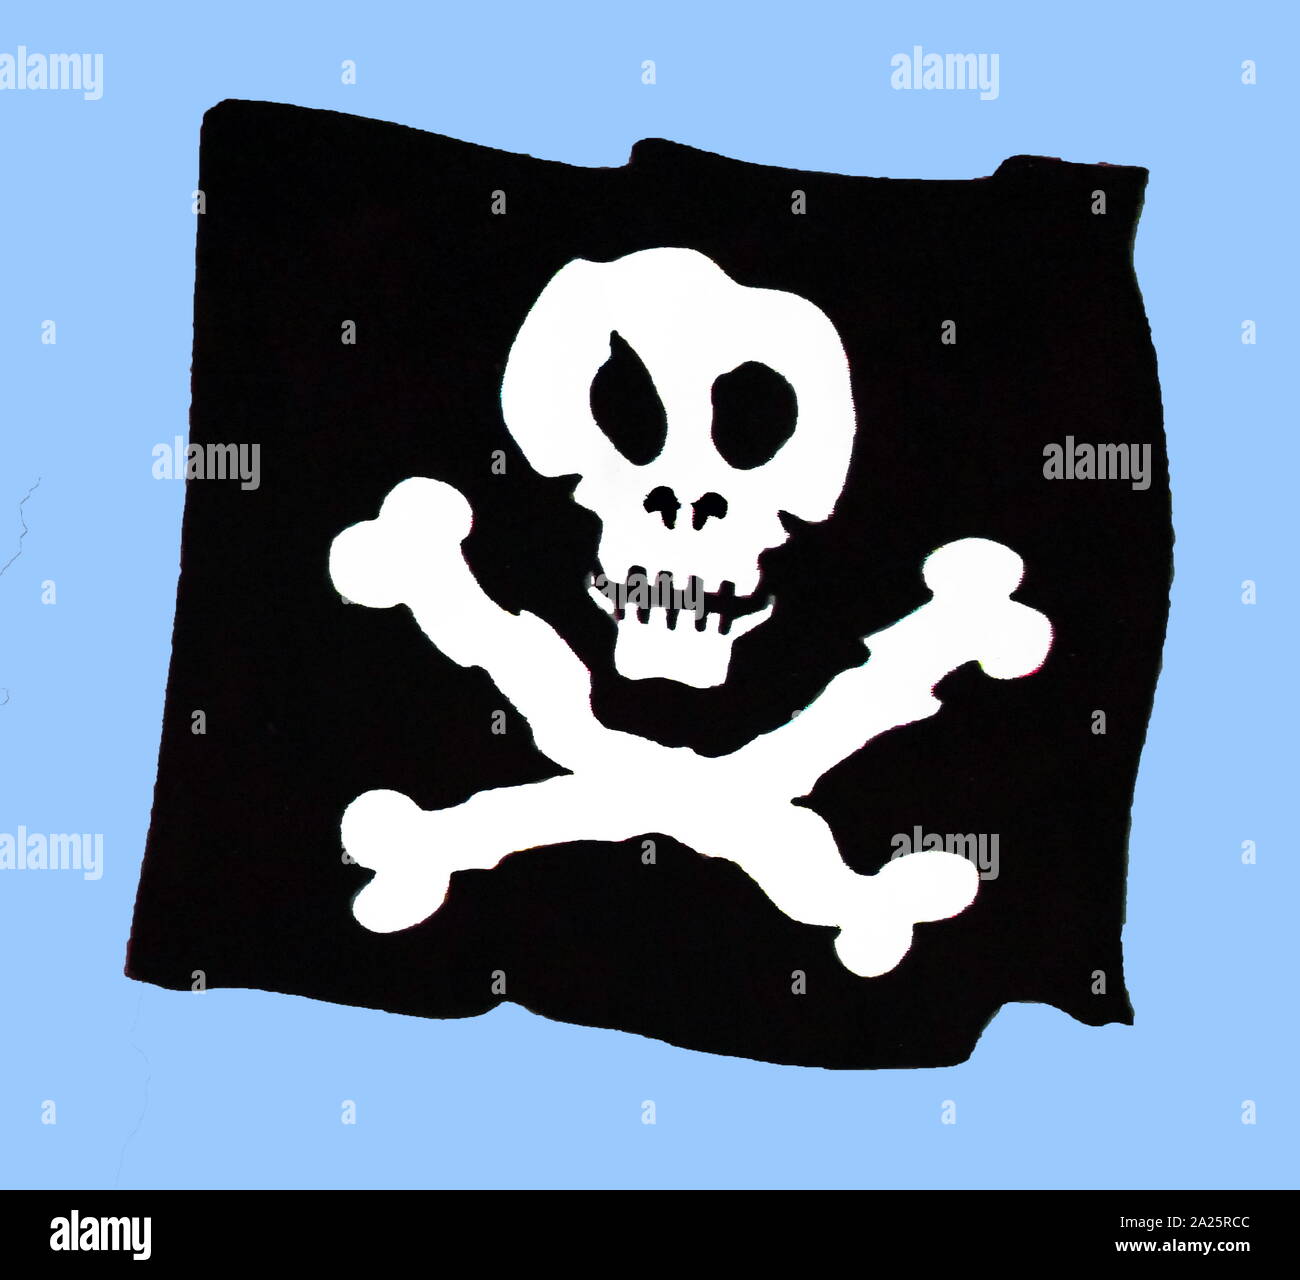 Jolly Roger est le nom anglais de la traditionnelle drapeaux déployés pour identifier un bateau pirate sur le point d'attaque, au cours de la début du 18e siècle. Le drapeau le plus souvent identifié comme le Jolly Roger aujourd'hui, la tête de mort symbole sur un drapeau noir, a été utilisé au cours de la 1710s par un certain nombre de capitaines pirates Banque D'Images